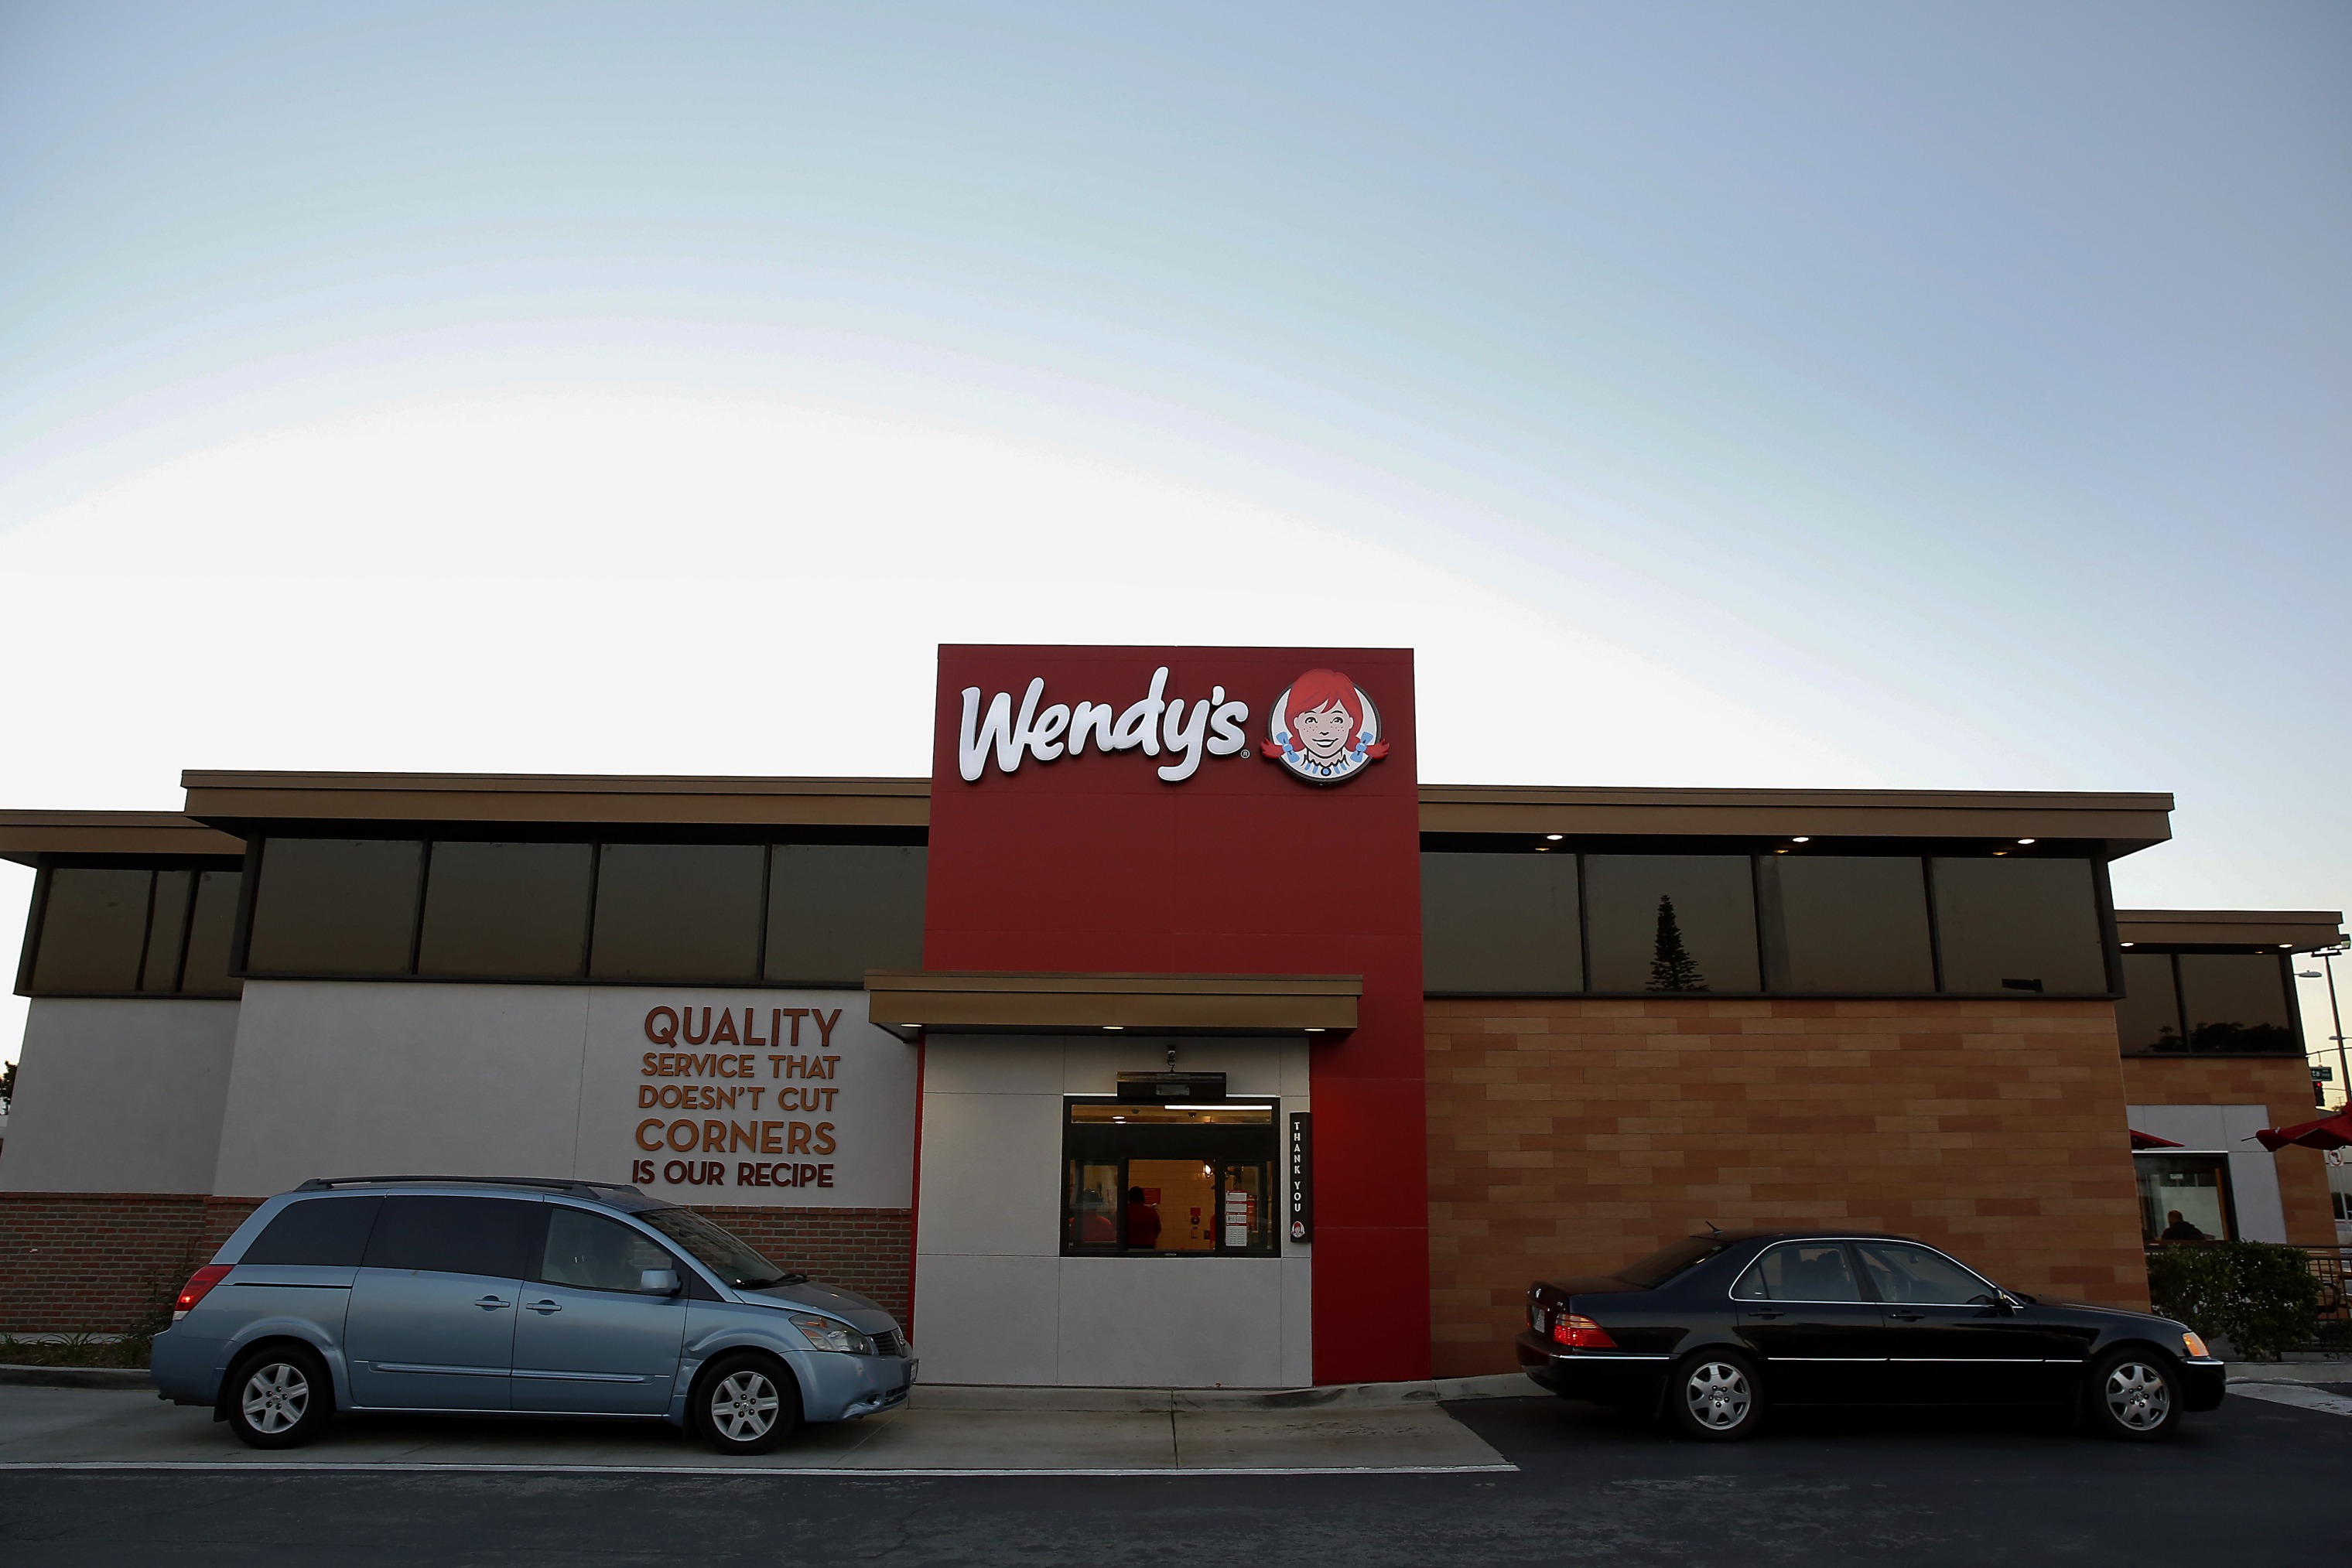 Wendy's тестирует чат-бота на основе ИИ для приема заказов в ресторанах